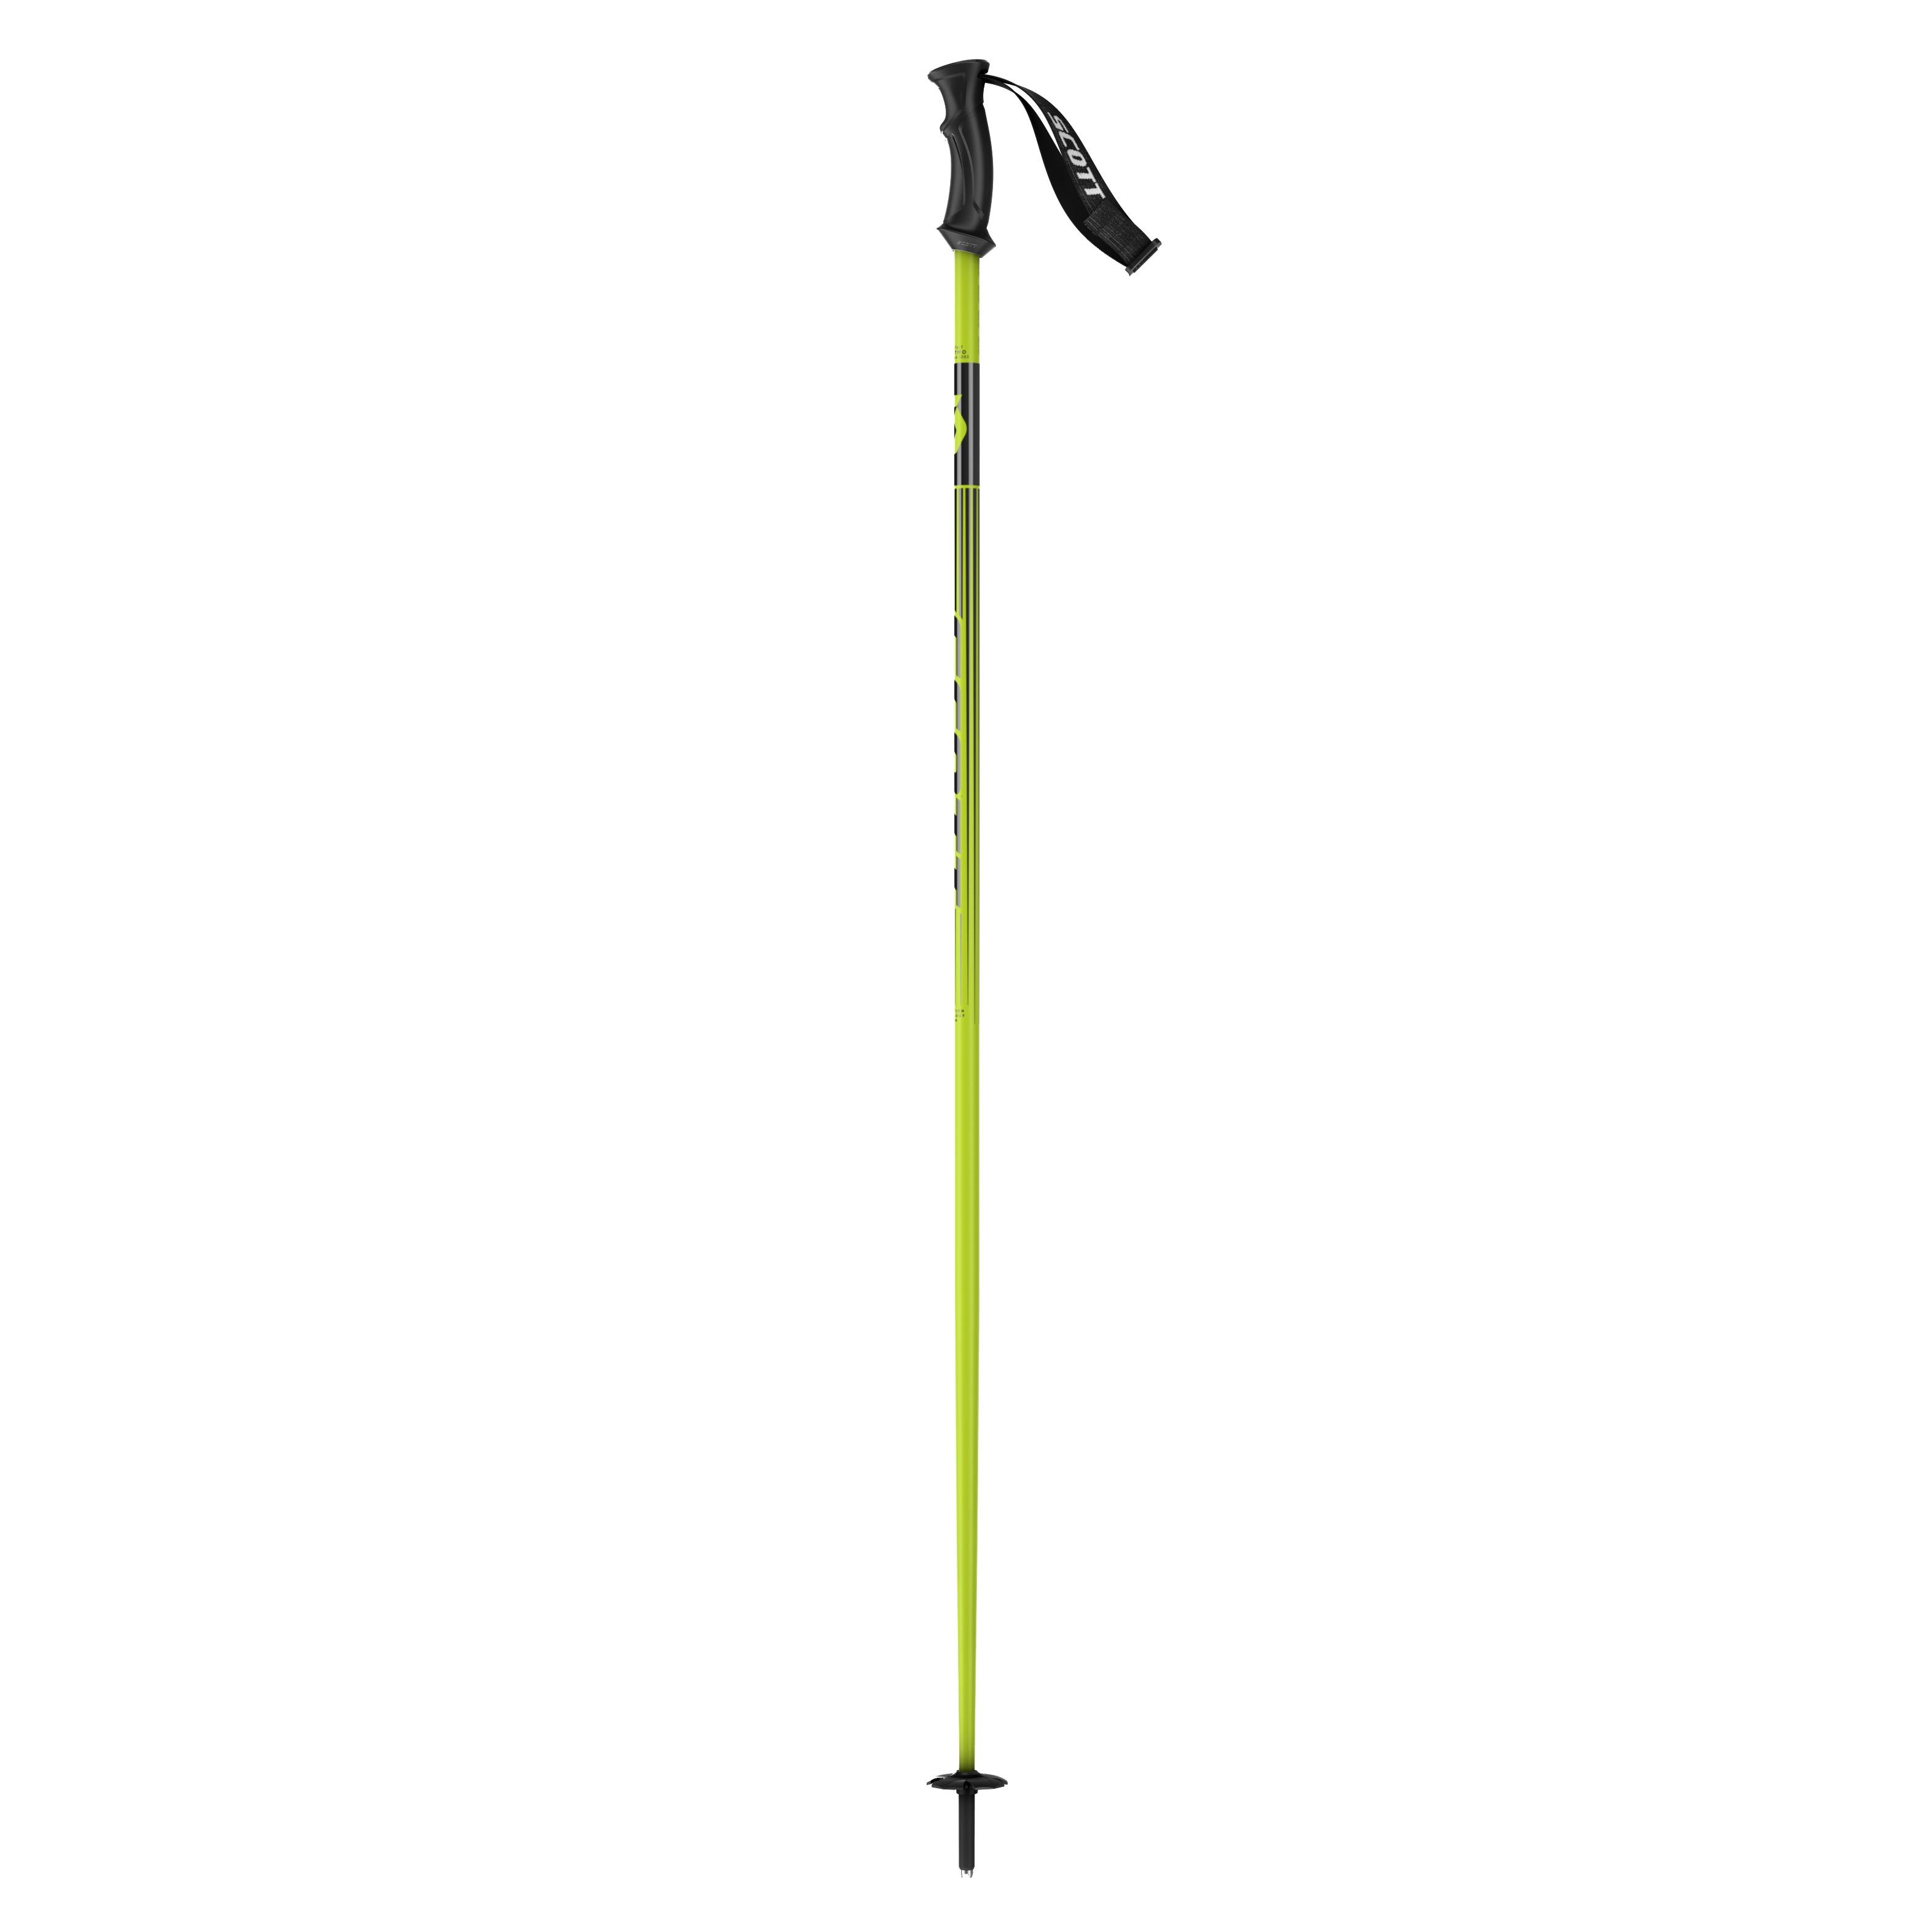 Bastón ski Scott 540 P-Lite Negro-Amarillo Neon